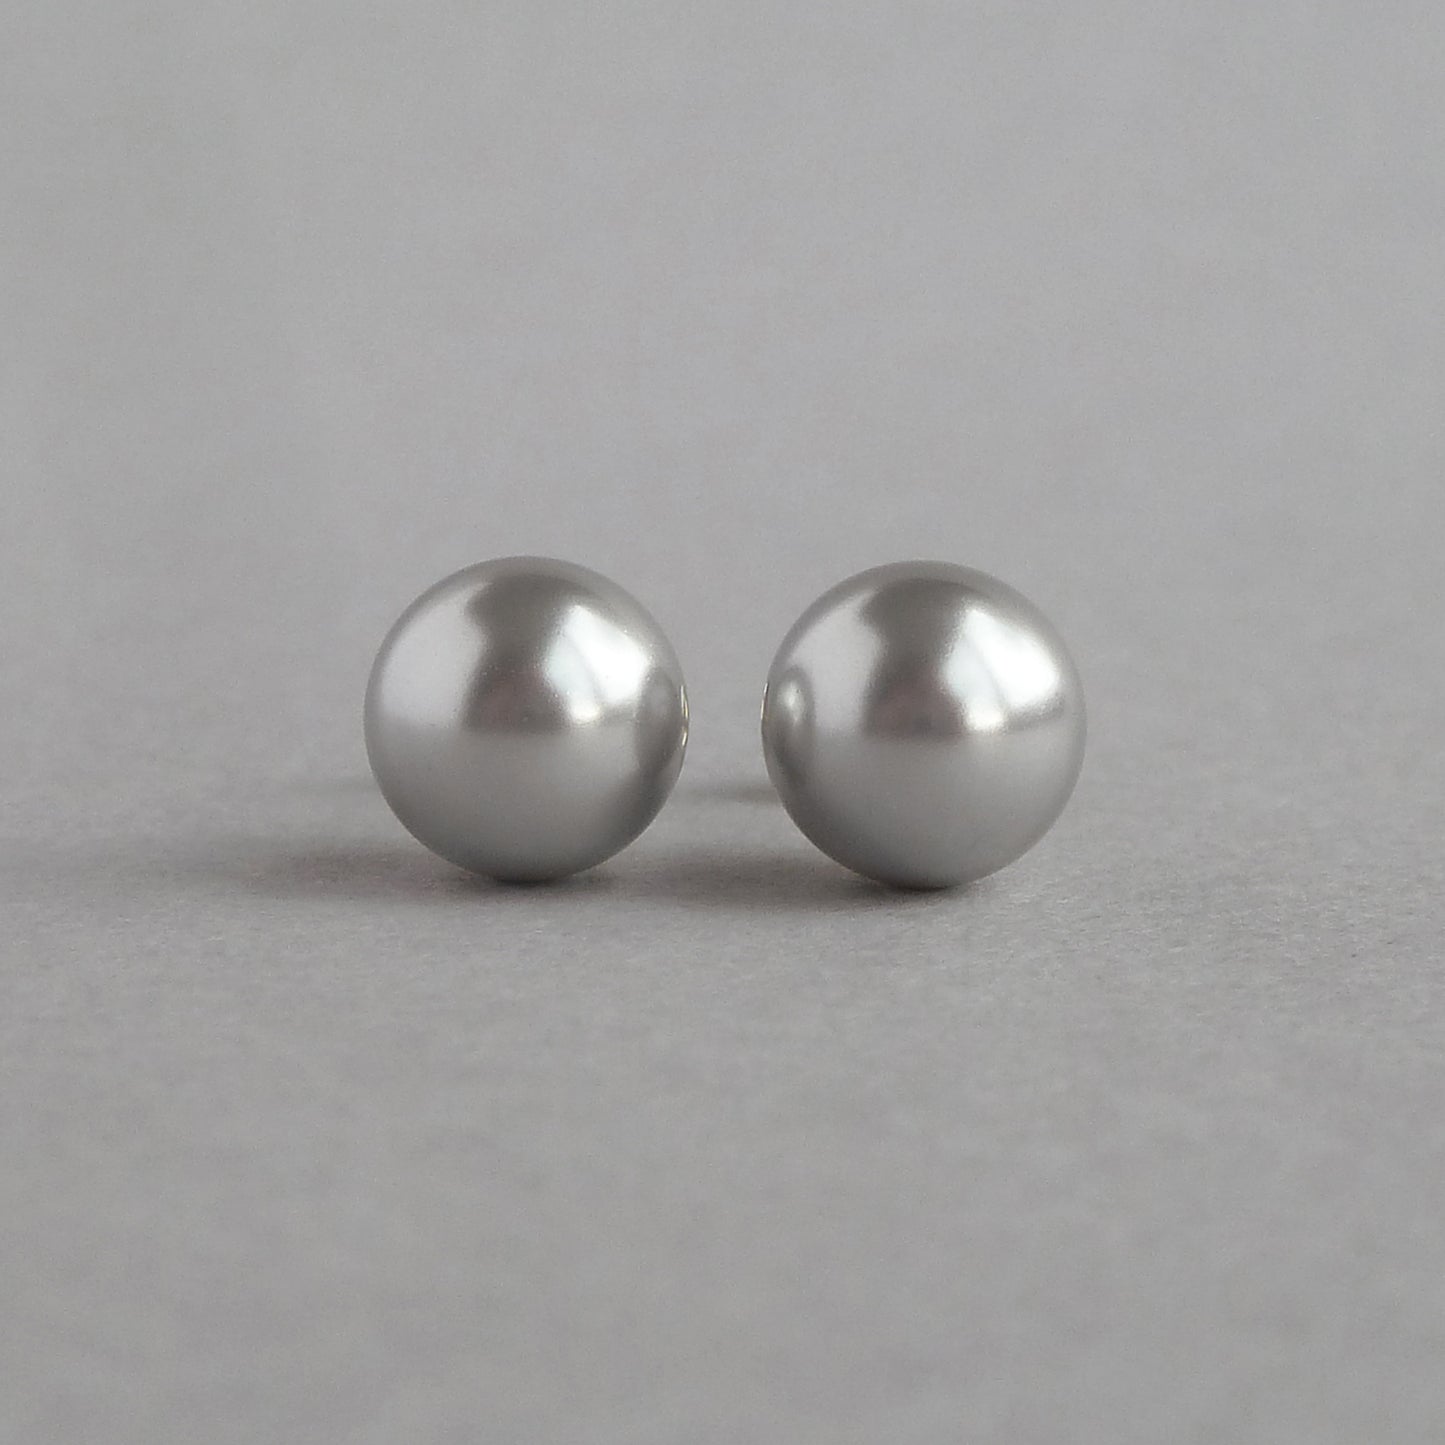 8mm silver grey stud earrings